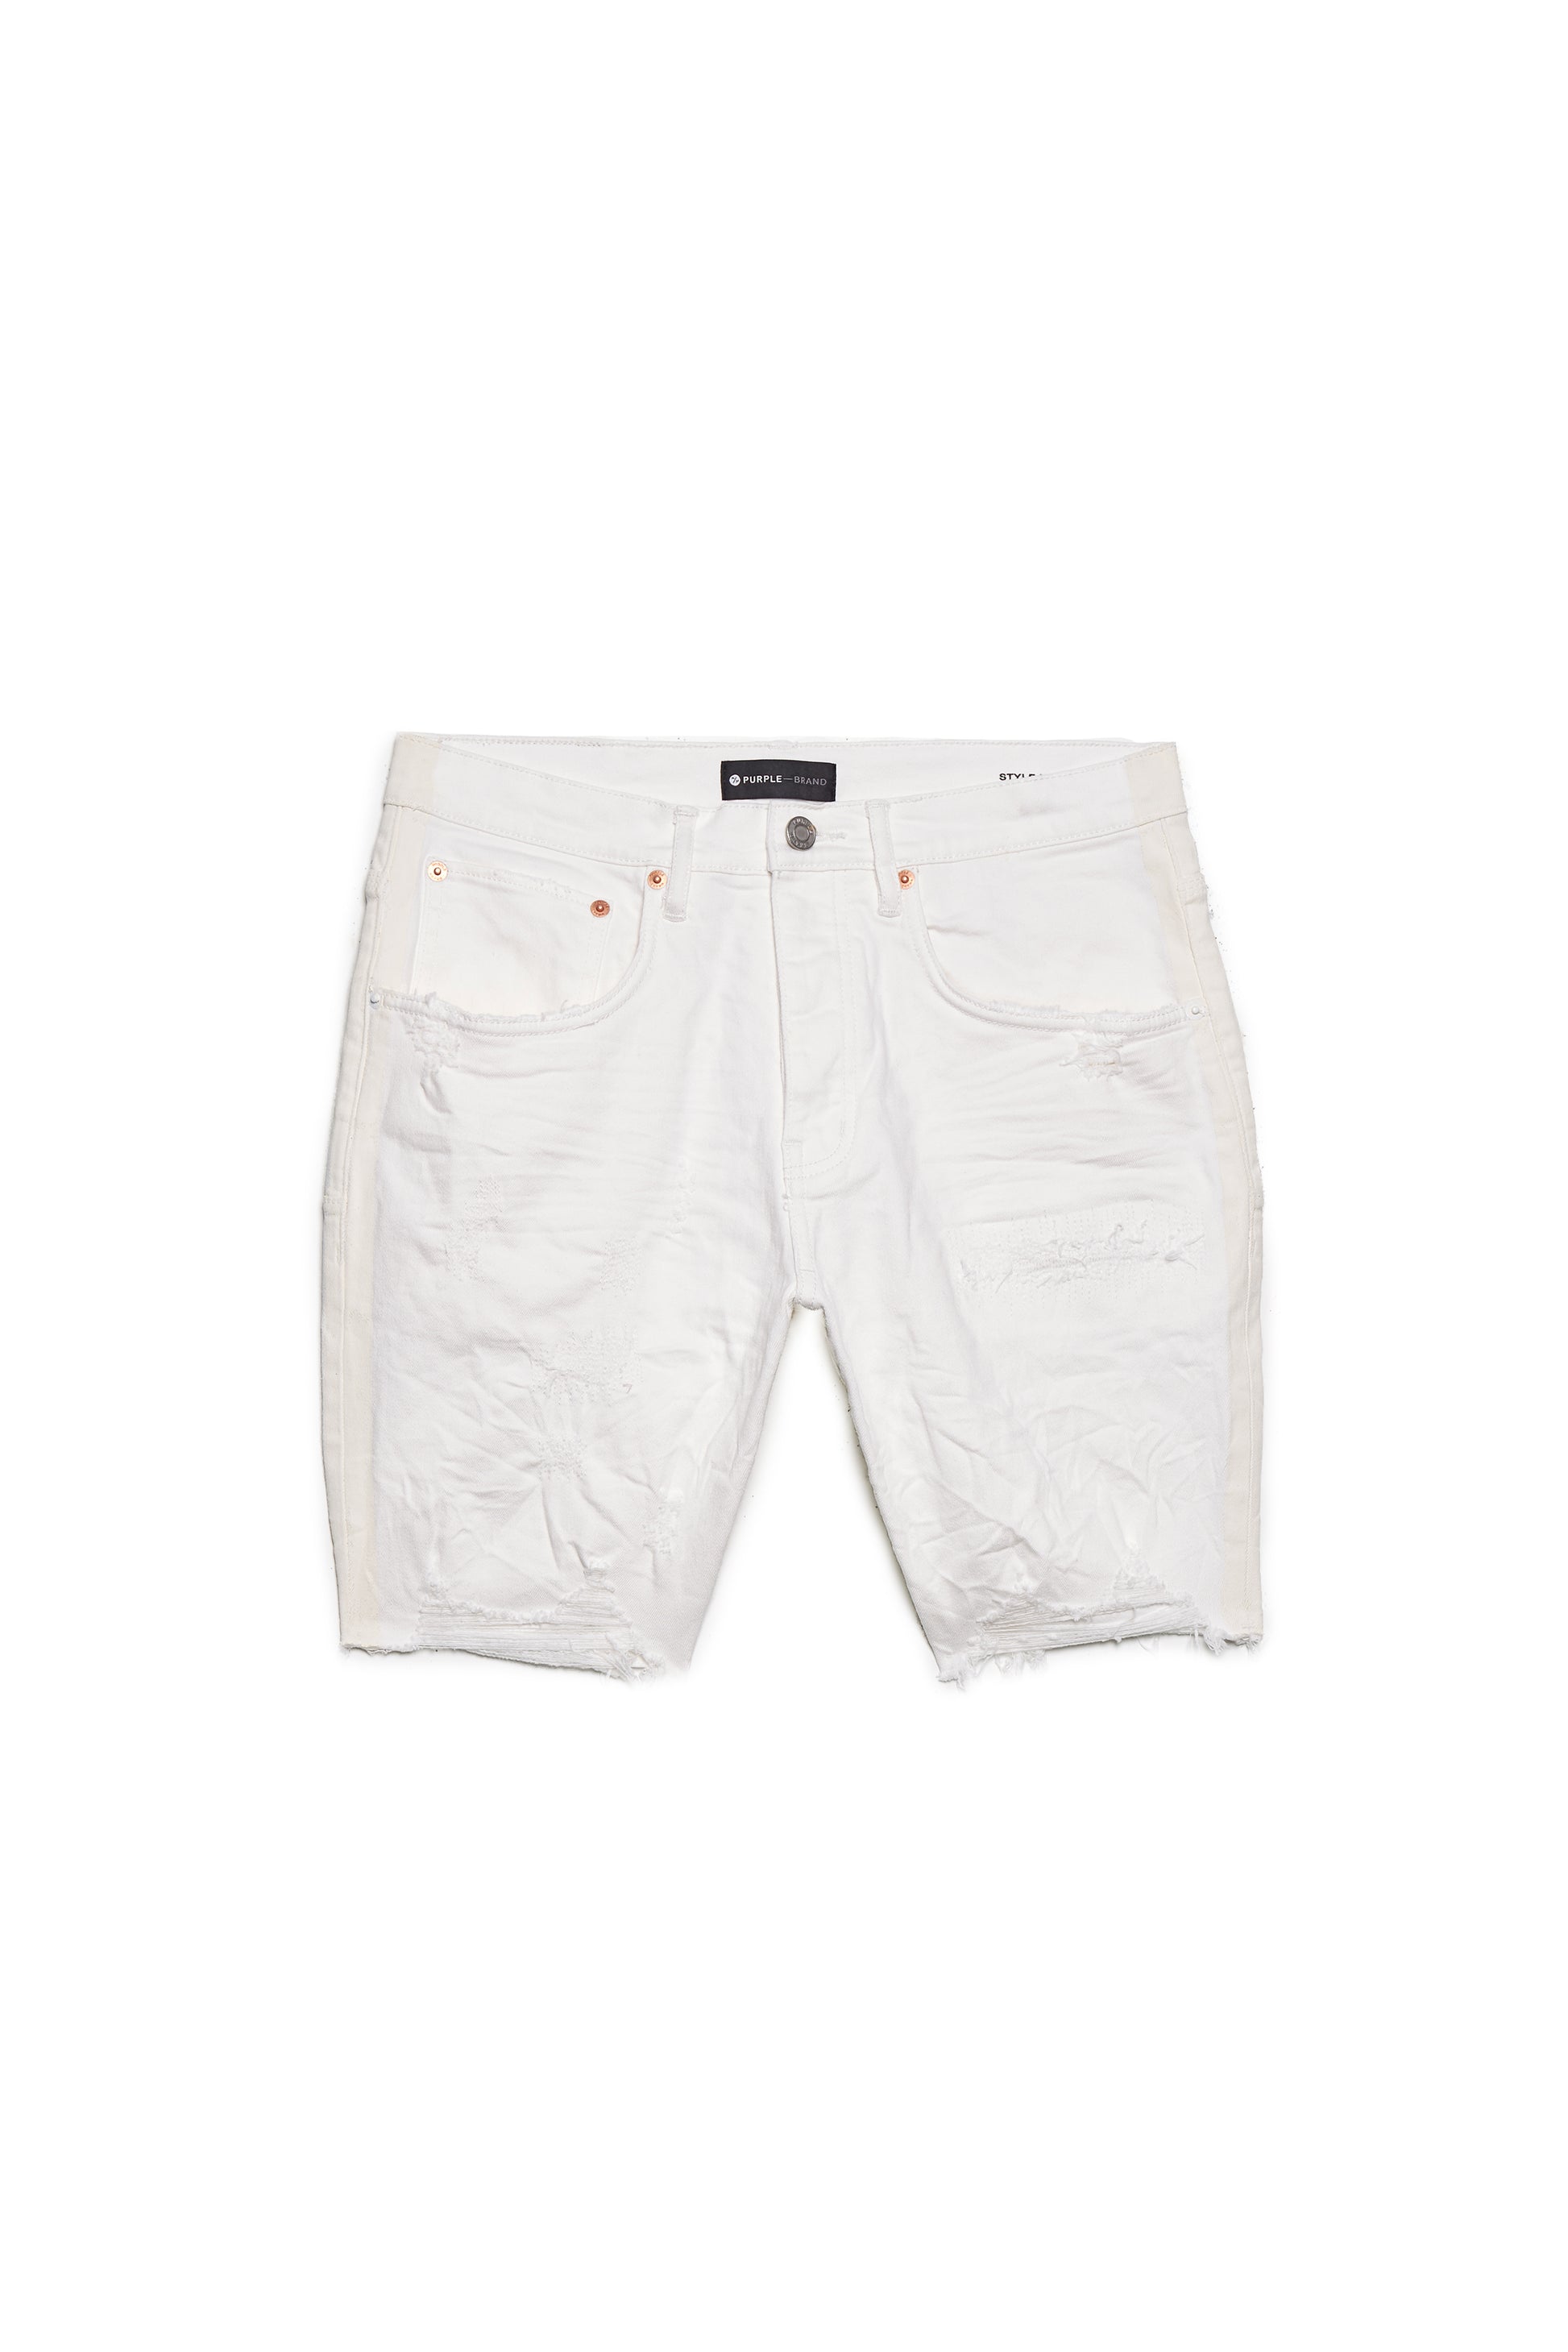 PURPLE BRAND - Men's Denim Jean Short - Mid Rise Short - Style No. P020 - White Stripe Paint - Front